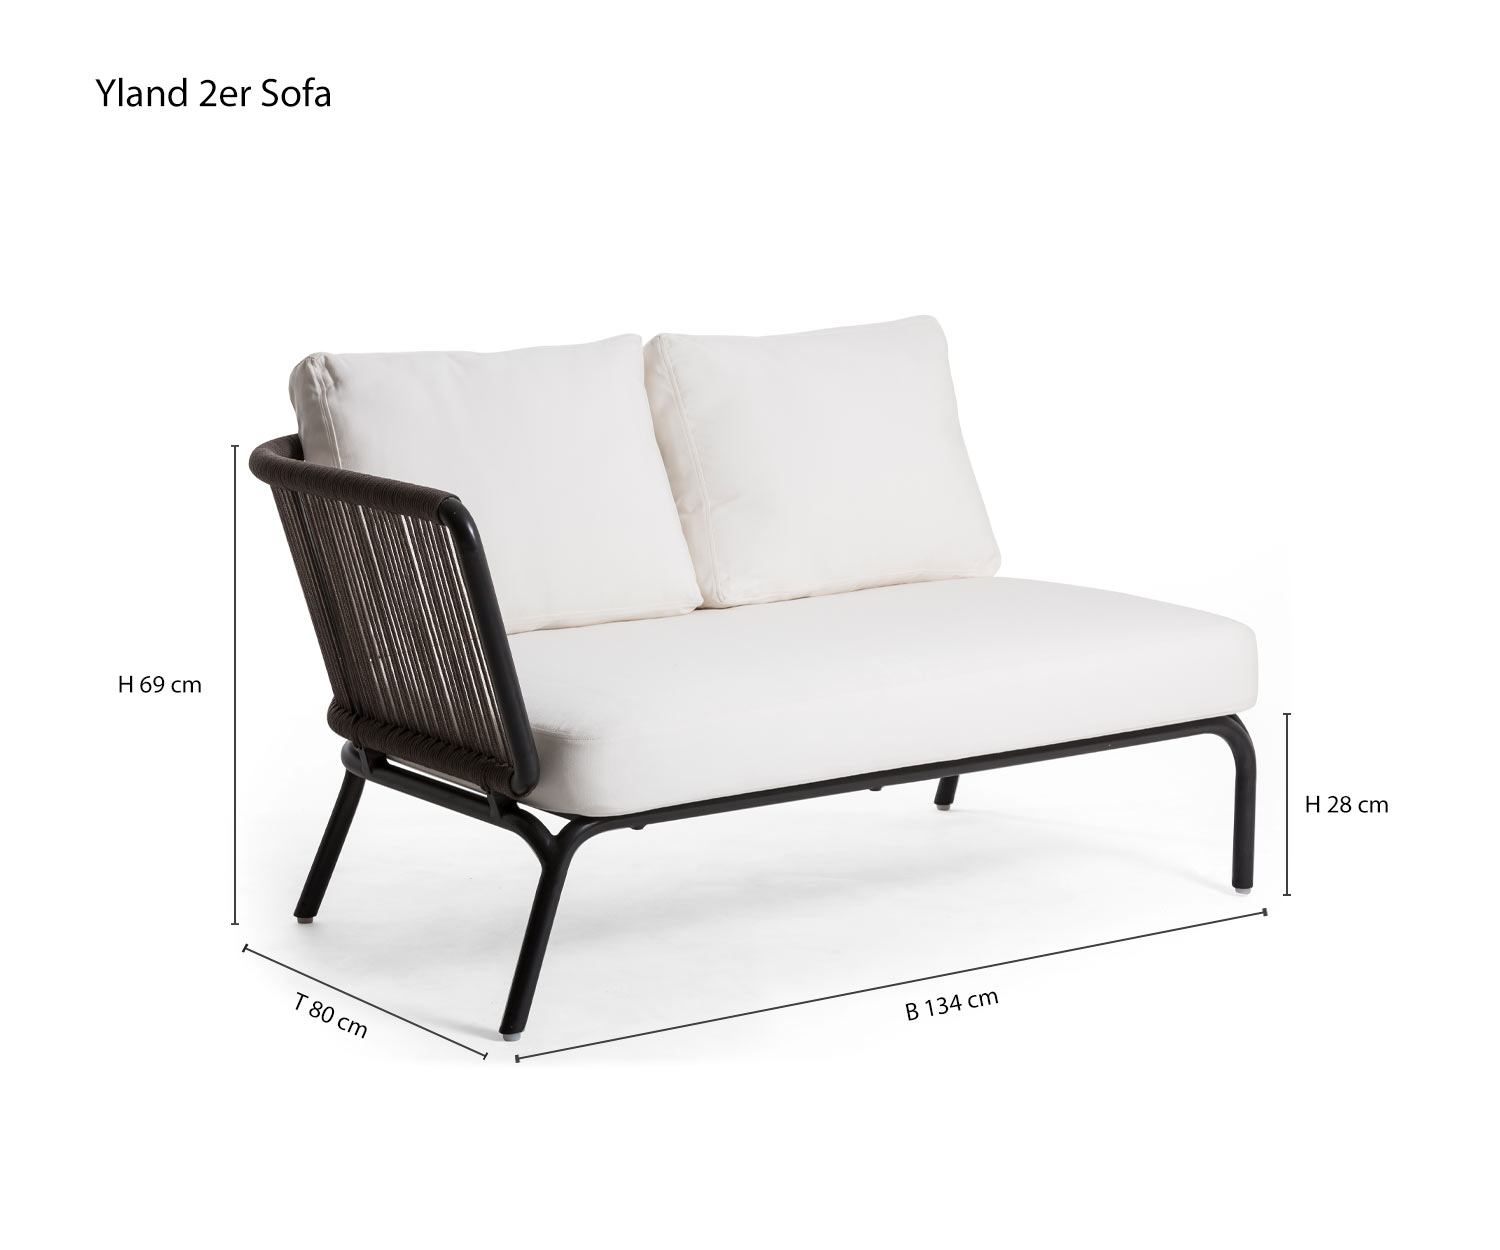 Yland Designer 2er Sofa für den Garten von Oasiq Größen Skizze Größenangaben Maße